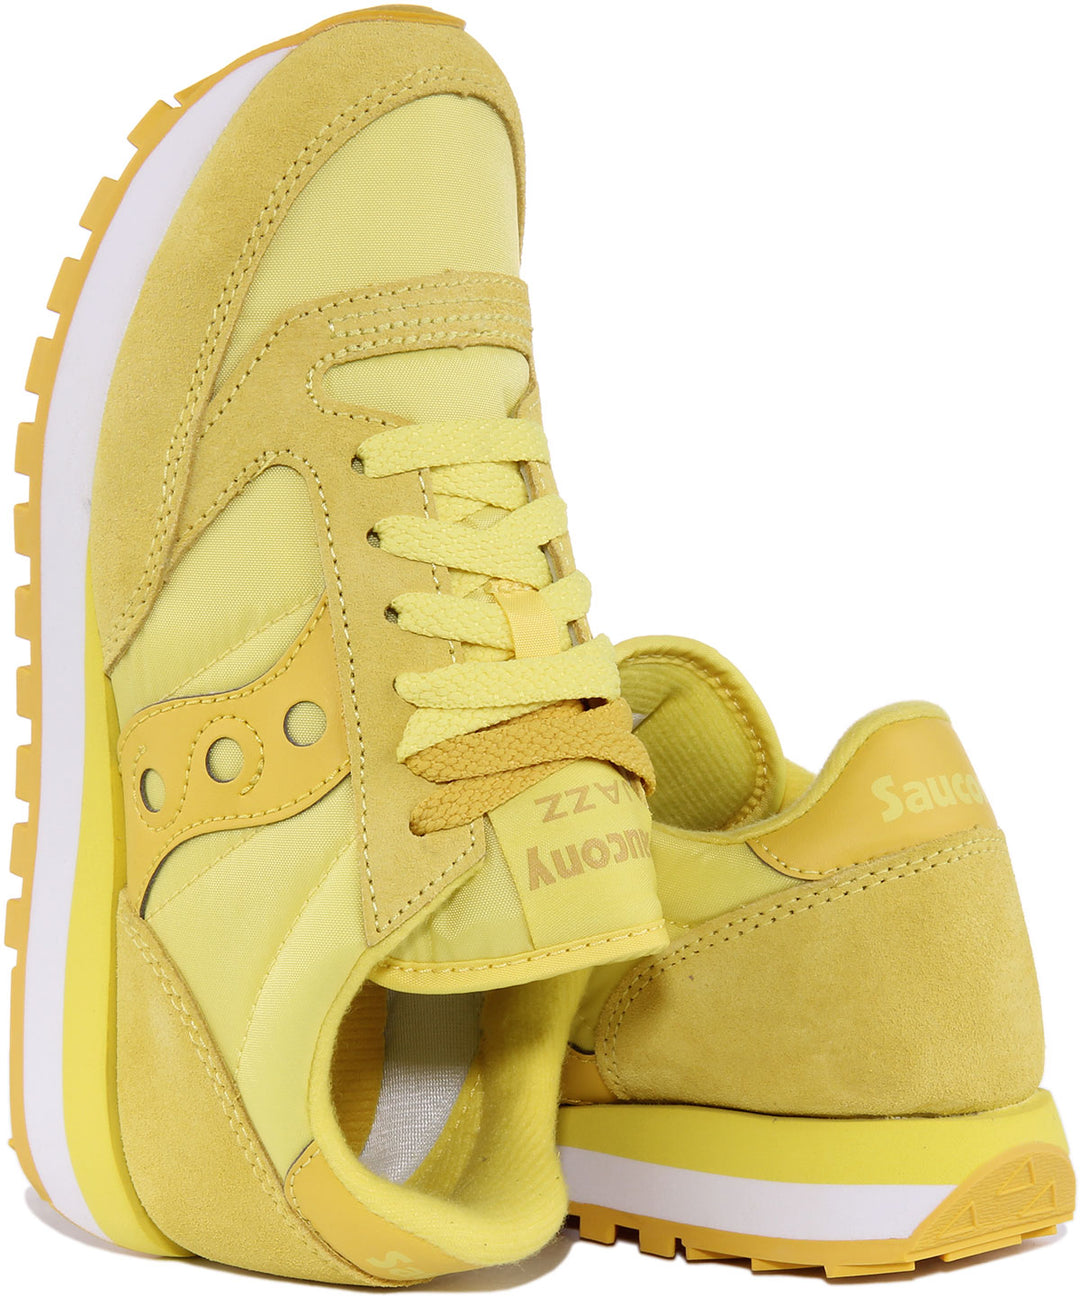 Saucony Jazz Original Zapatillas de deporte con cordones de ante y nylon para mujer en amarillo